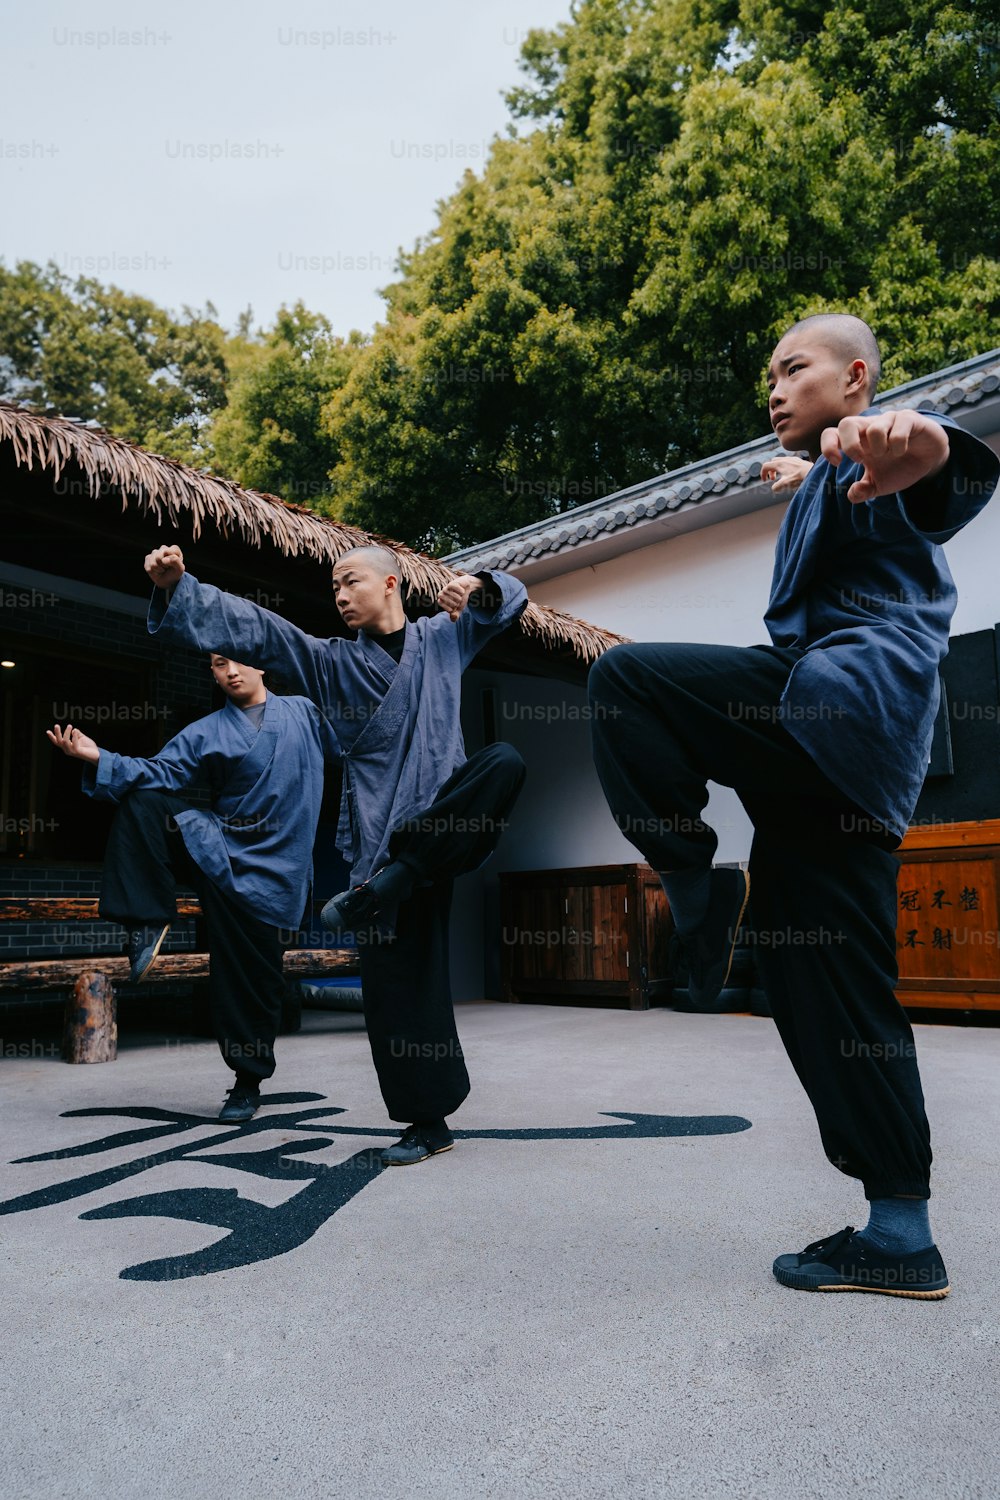 Un grupo de hombres practicando movimientos marciales en un patio